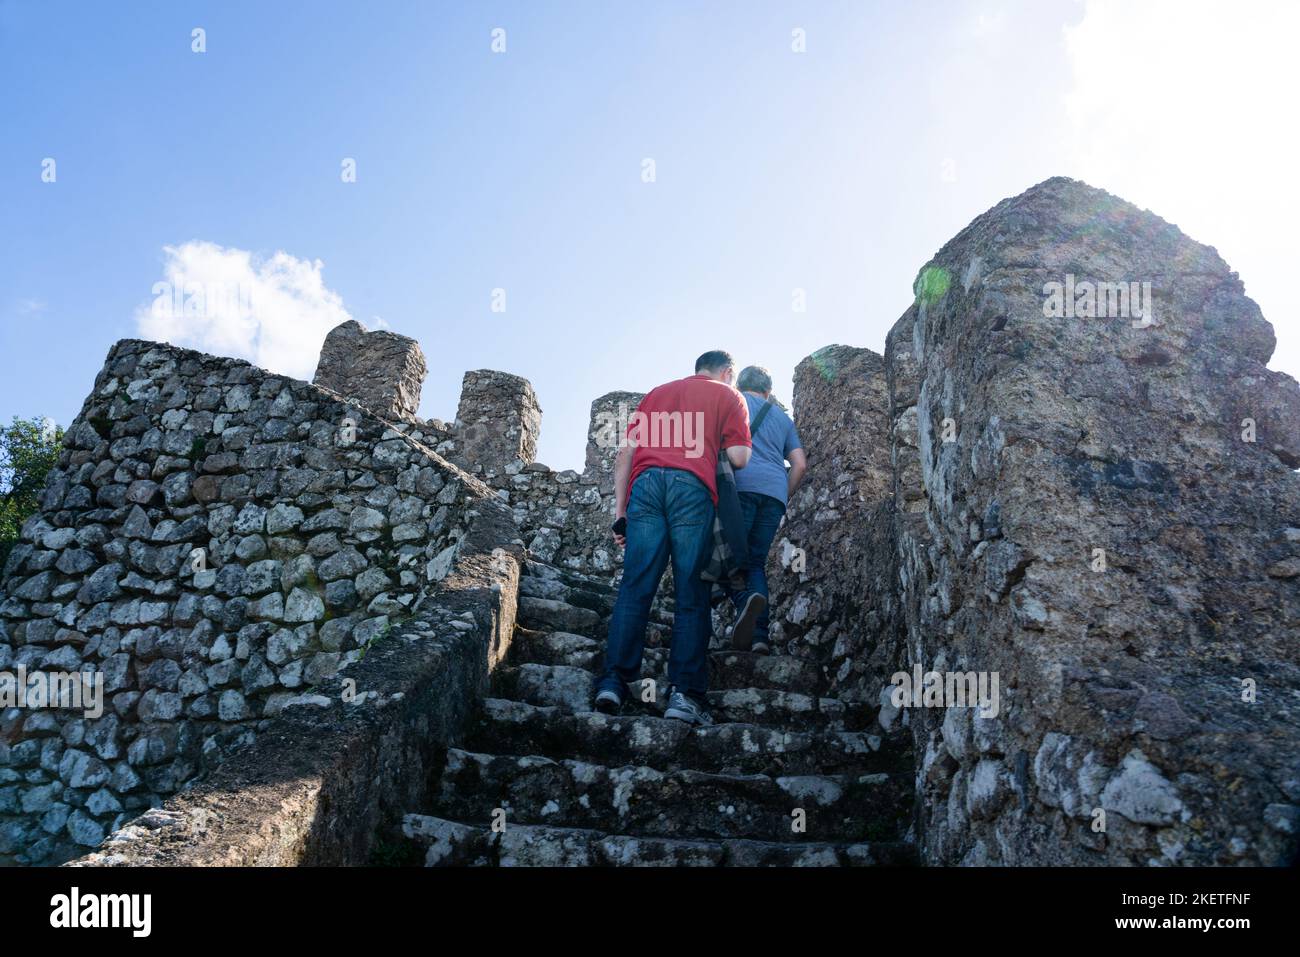 Les touristes grimpent les murs fortifiés et les tourelles du château mauresque des Maures datant du 10th siècle (Castelo dos Mouros) au-dessus de Sintra, Portugal. Banque D'Images